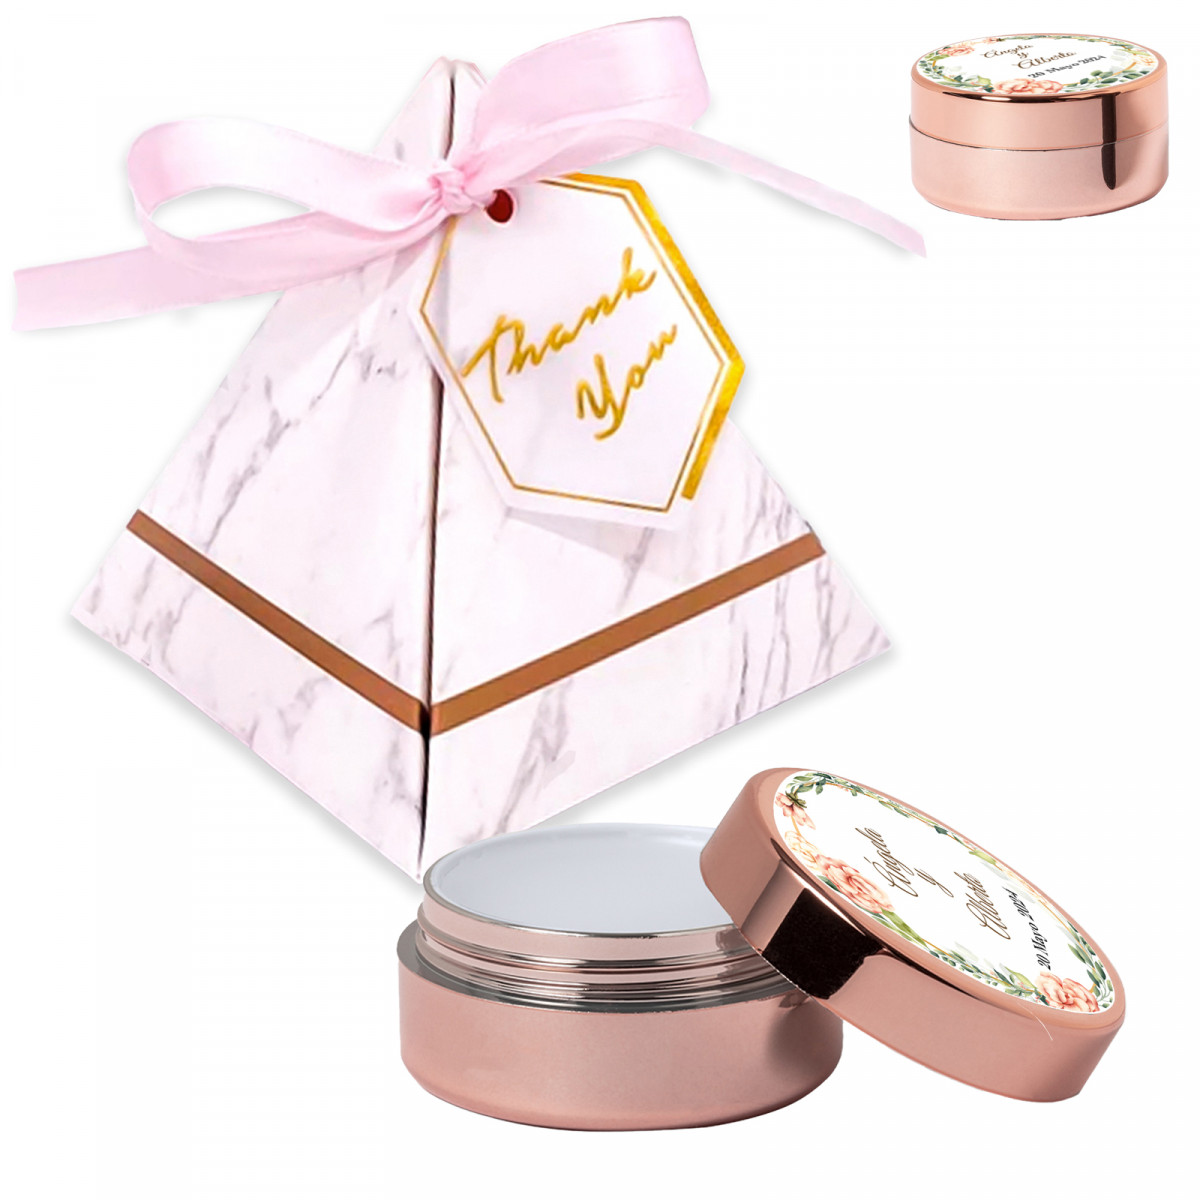 Brillo de labios personalizado presentado en caja piramidal decorativa